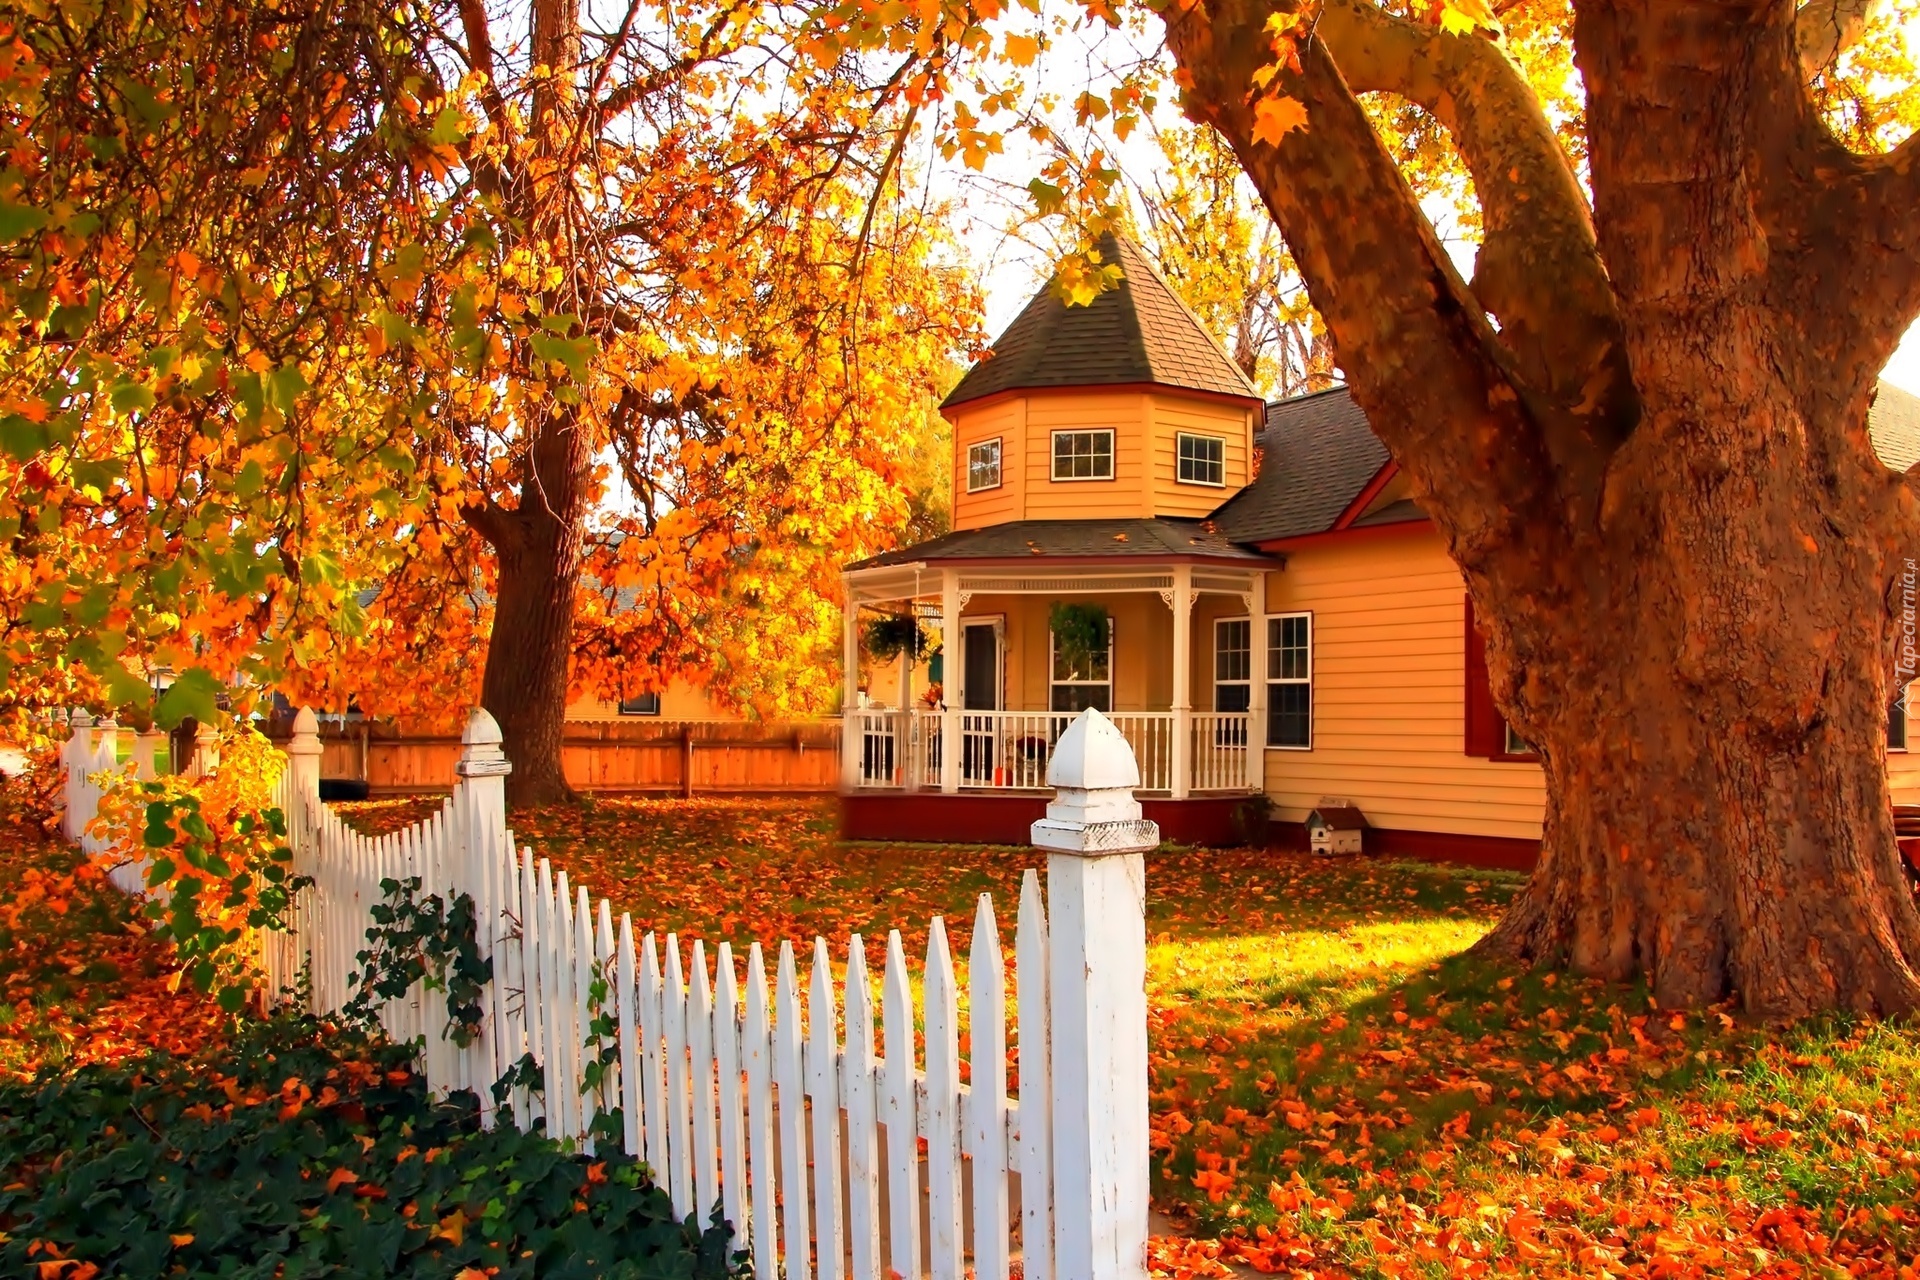 Jesień, Dom, Ogrodzenie, Drzewa, Liście